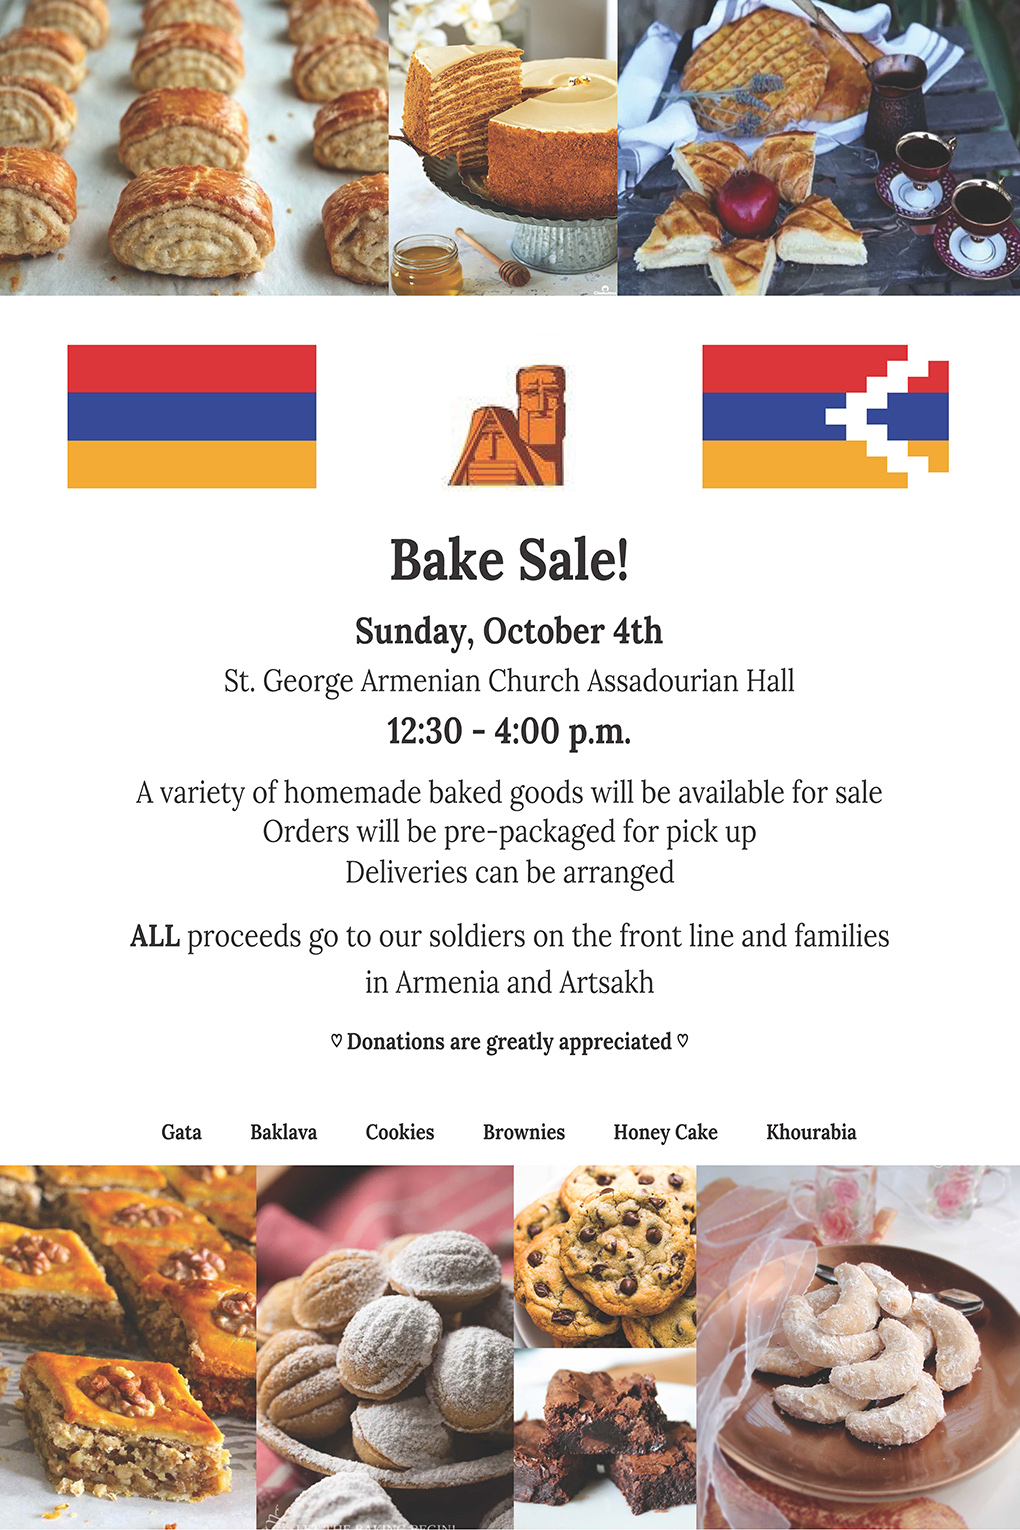 Bake Sale Fundraiser for Artsakh